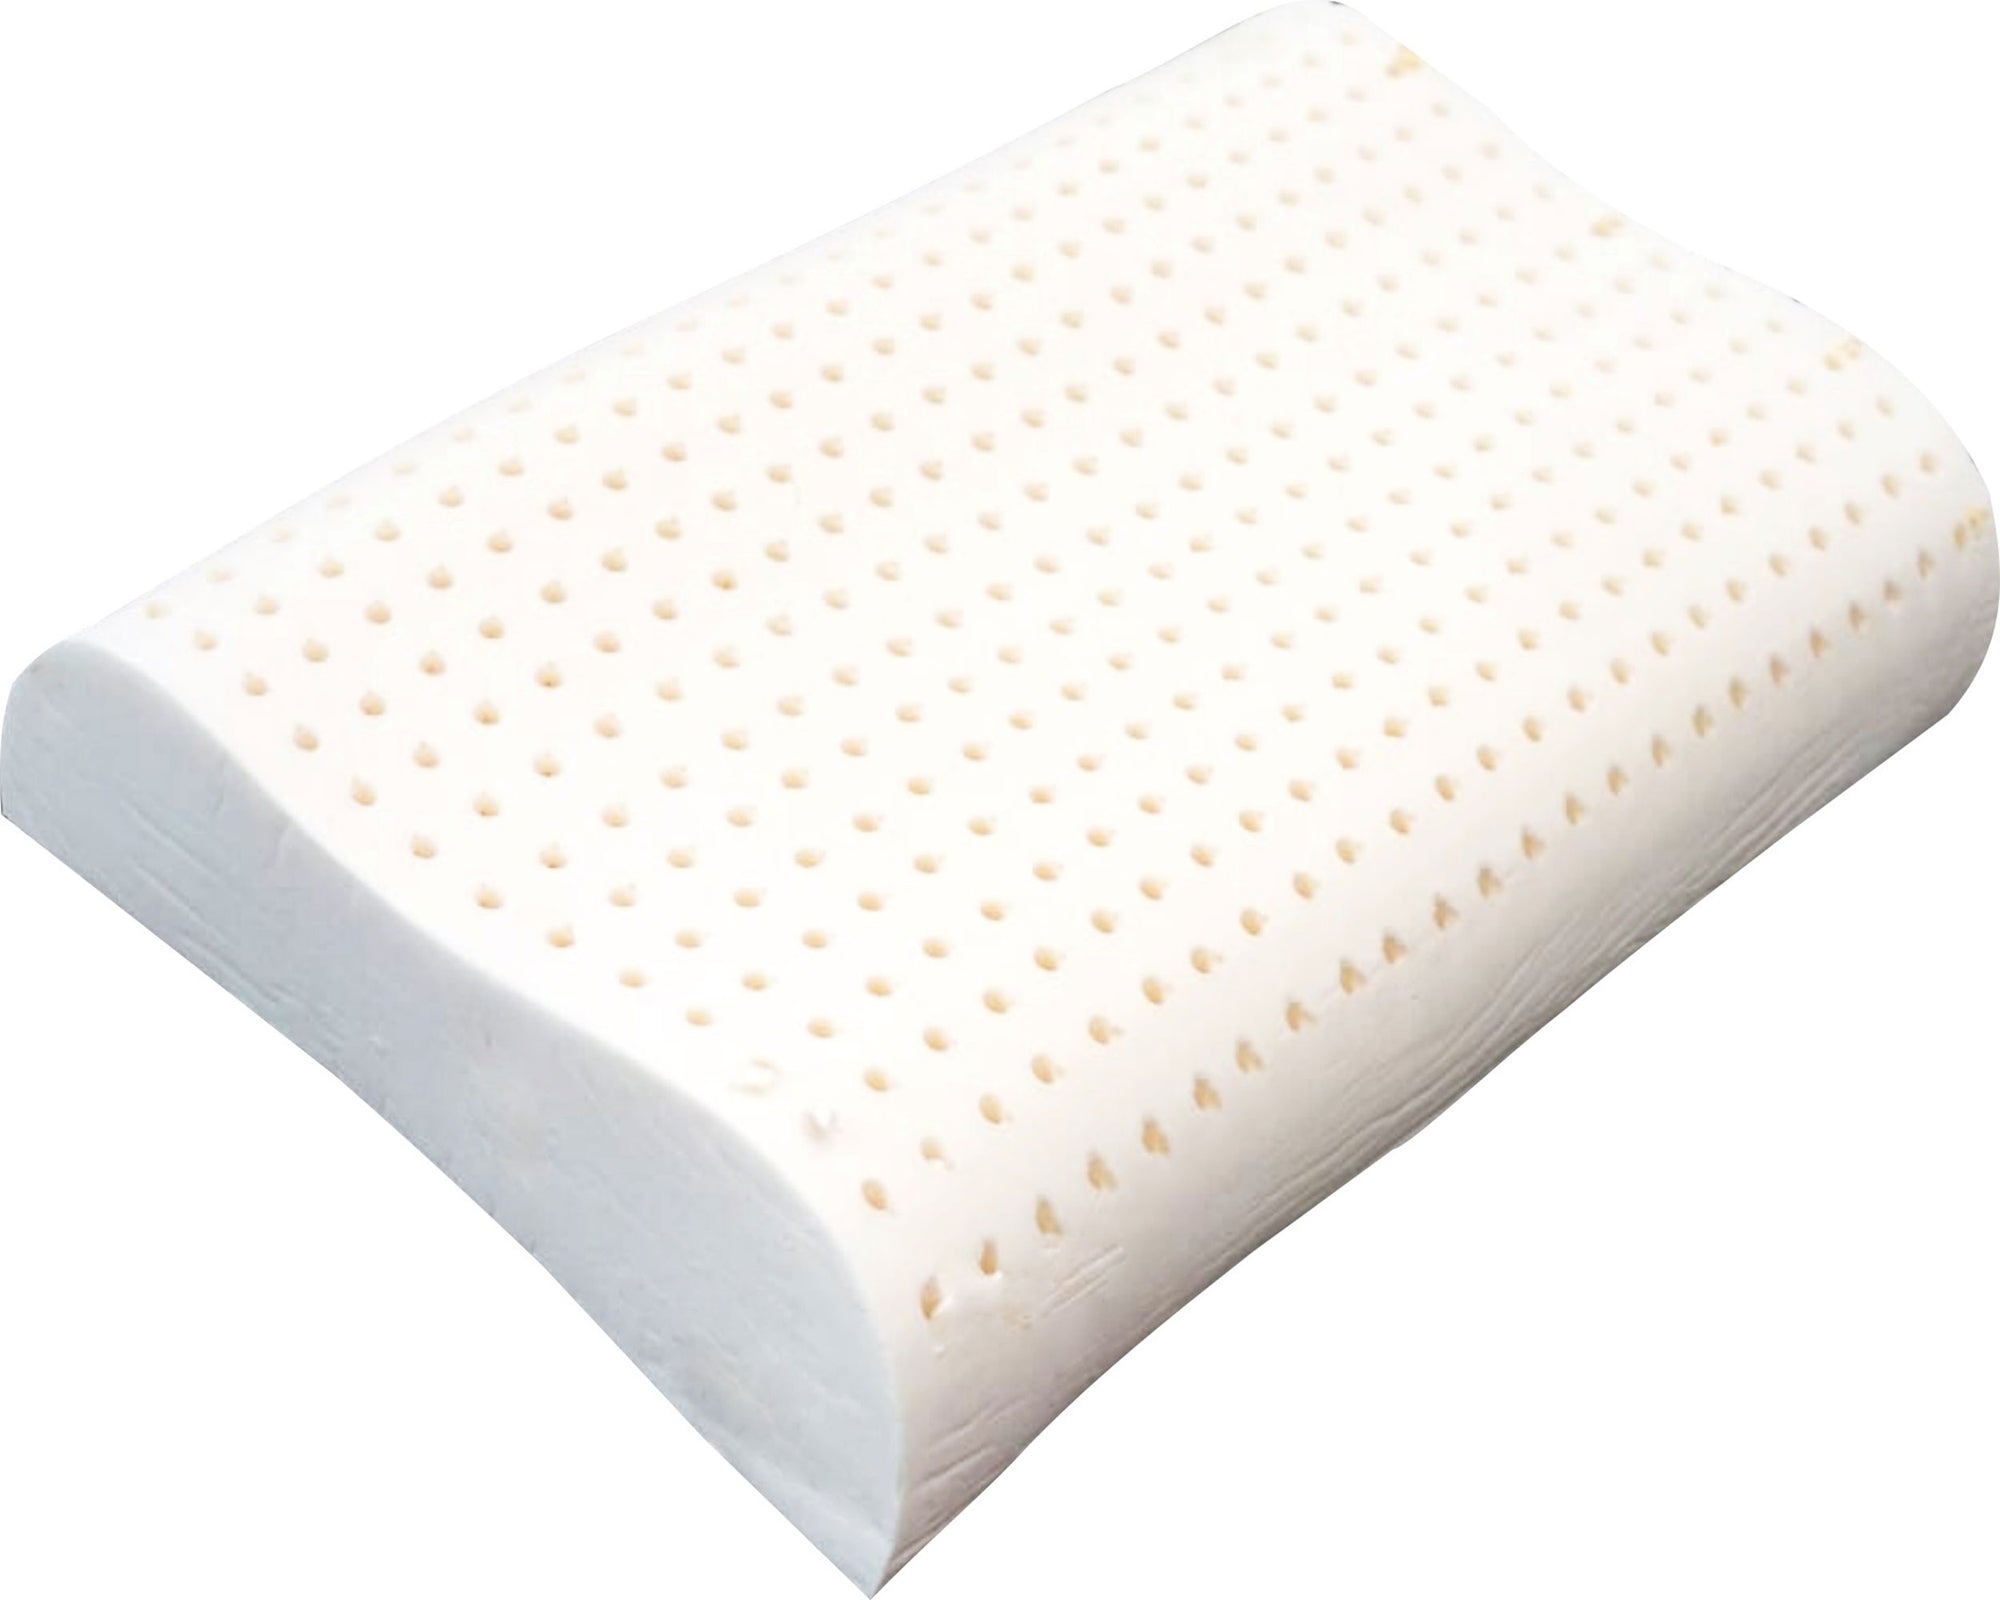 Sofzsleep Contour Latex Pillow